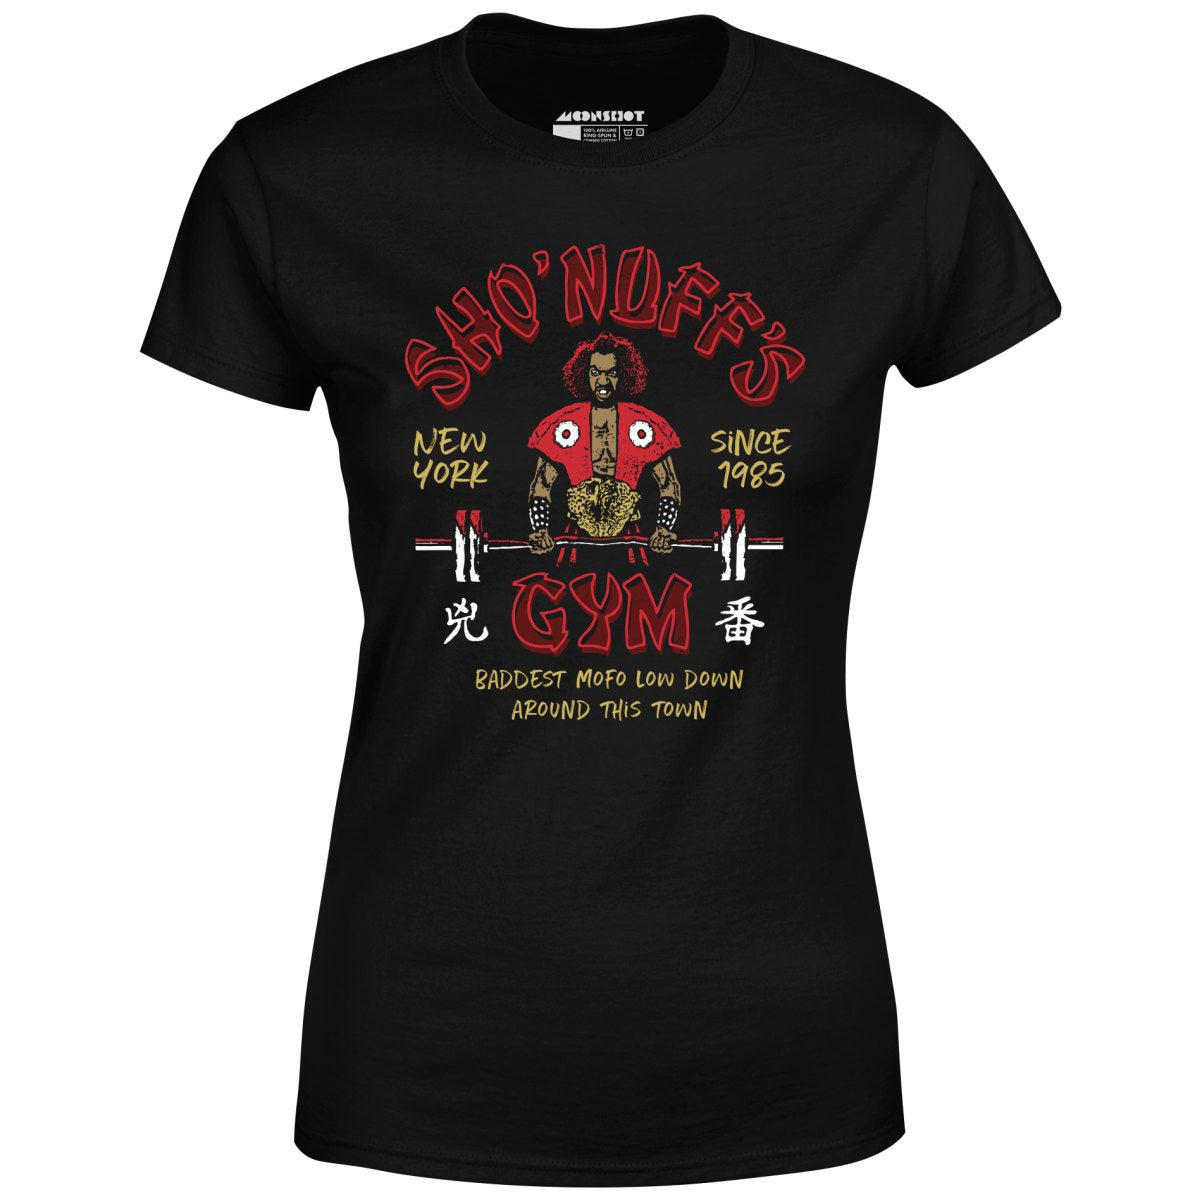 Sho'nuff's Gym - Women's T-Shirt